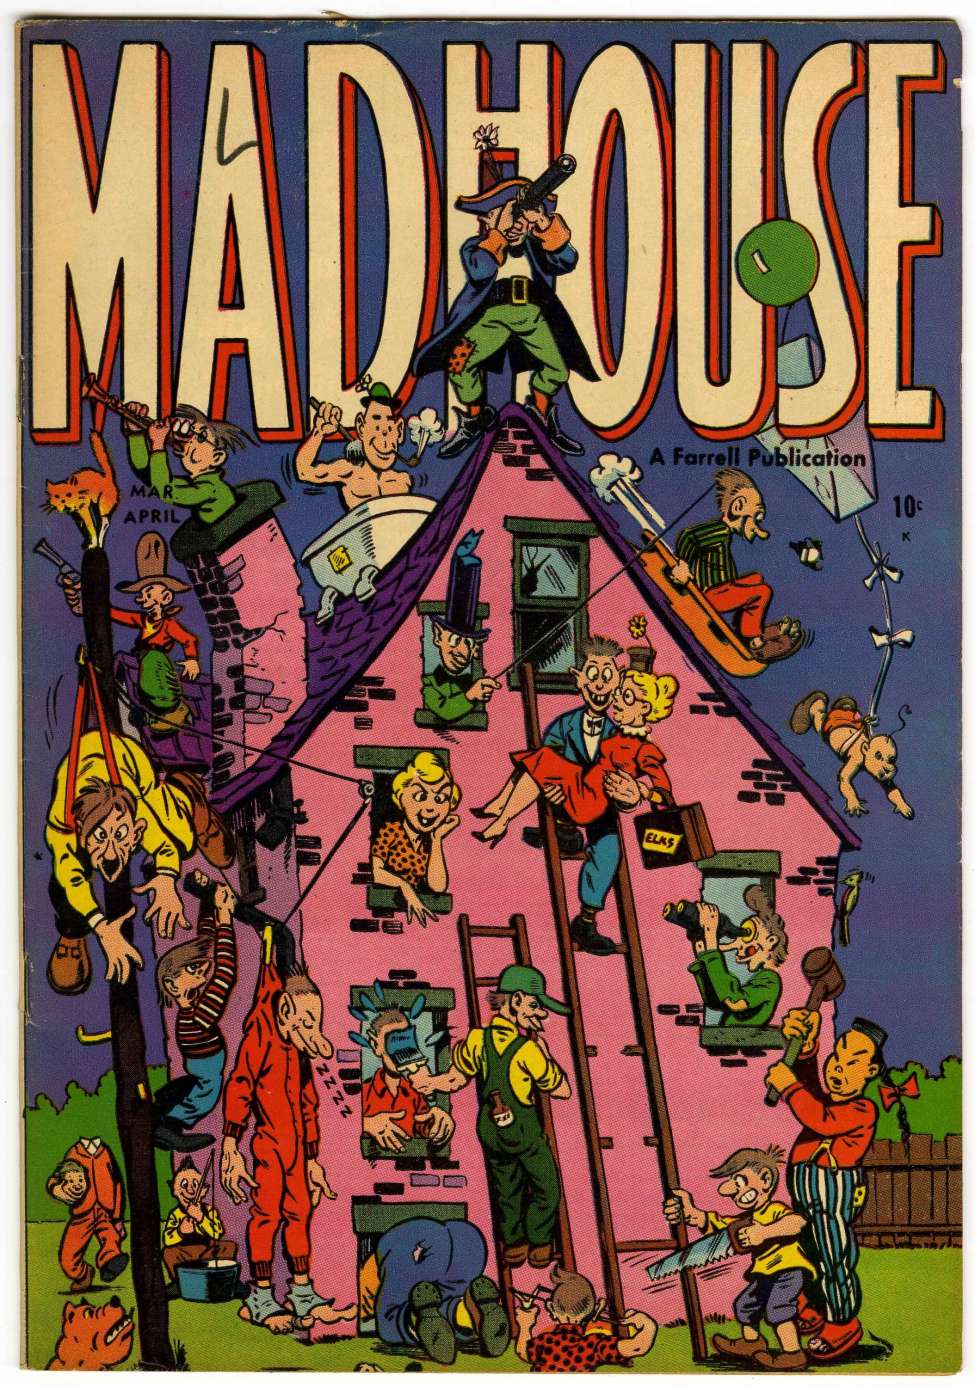 Madhouse comics